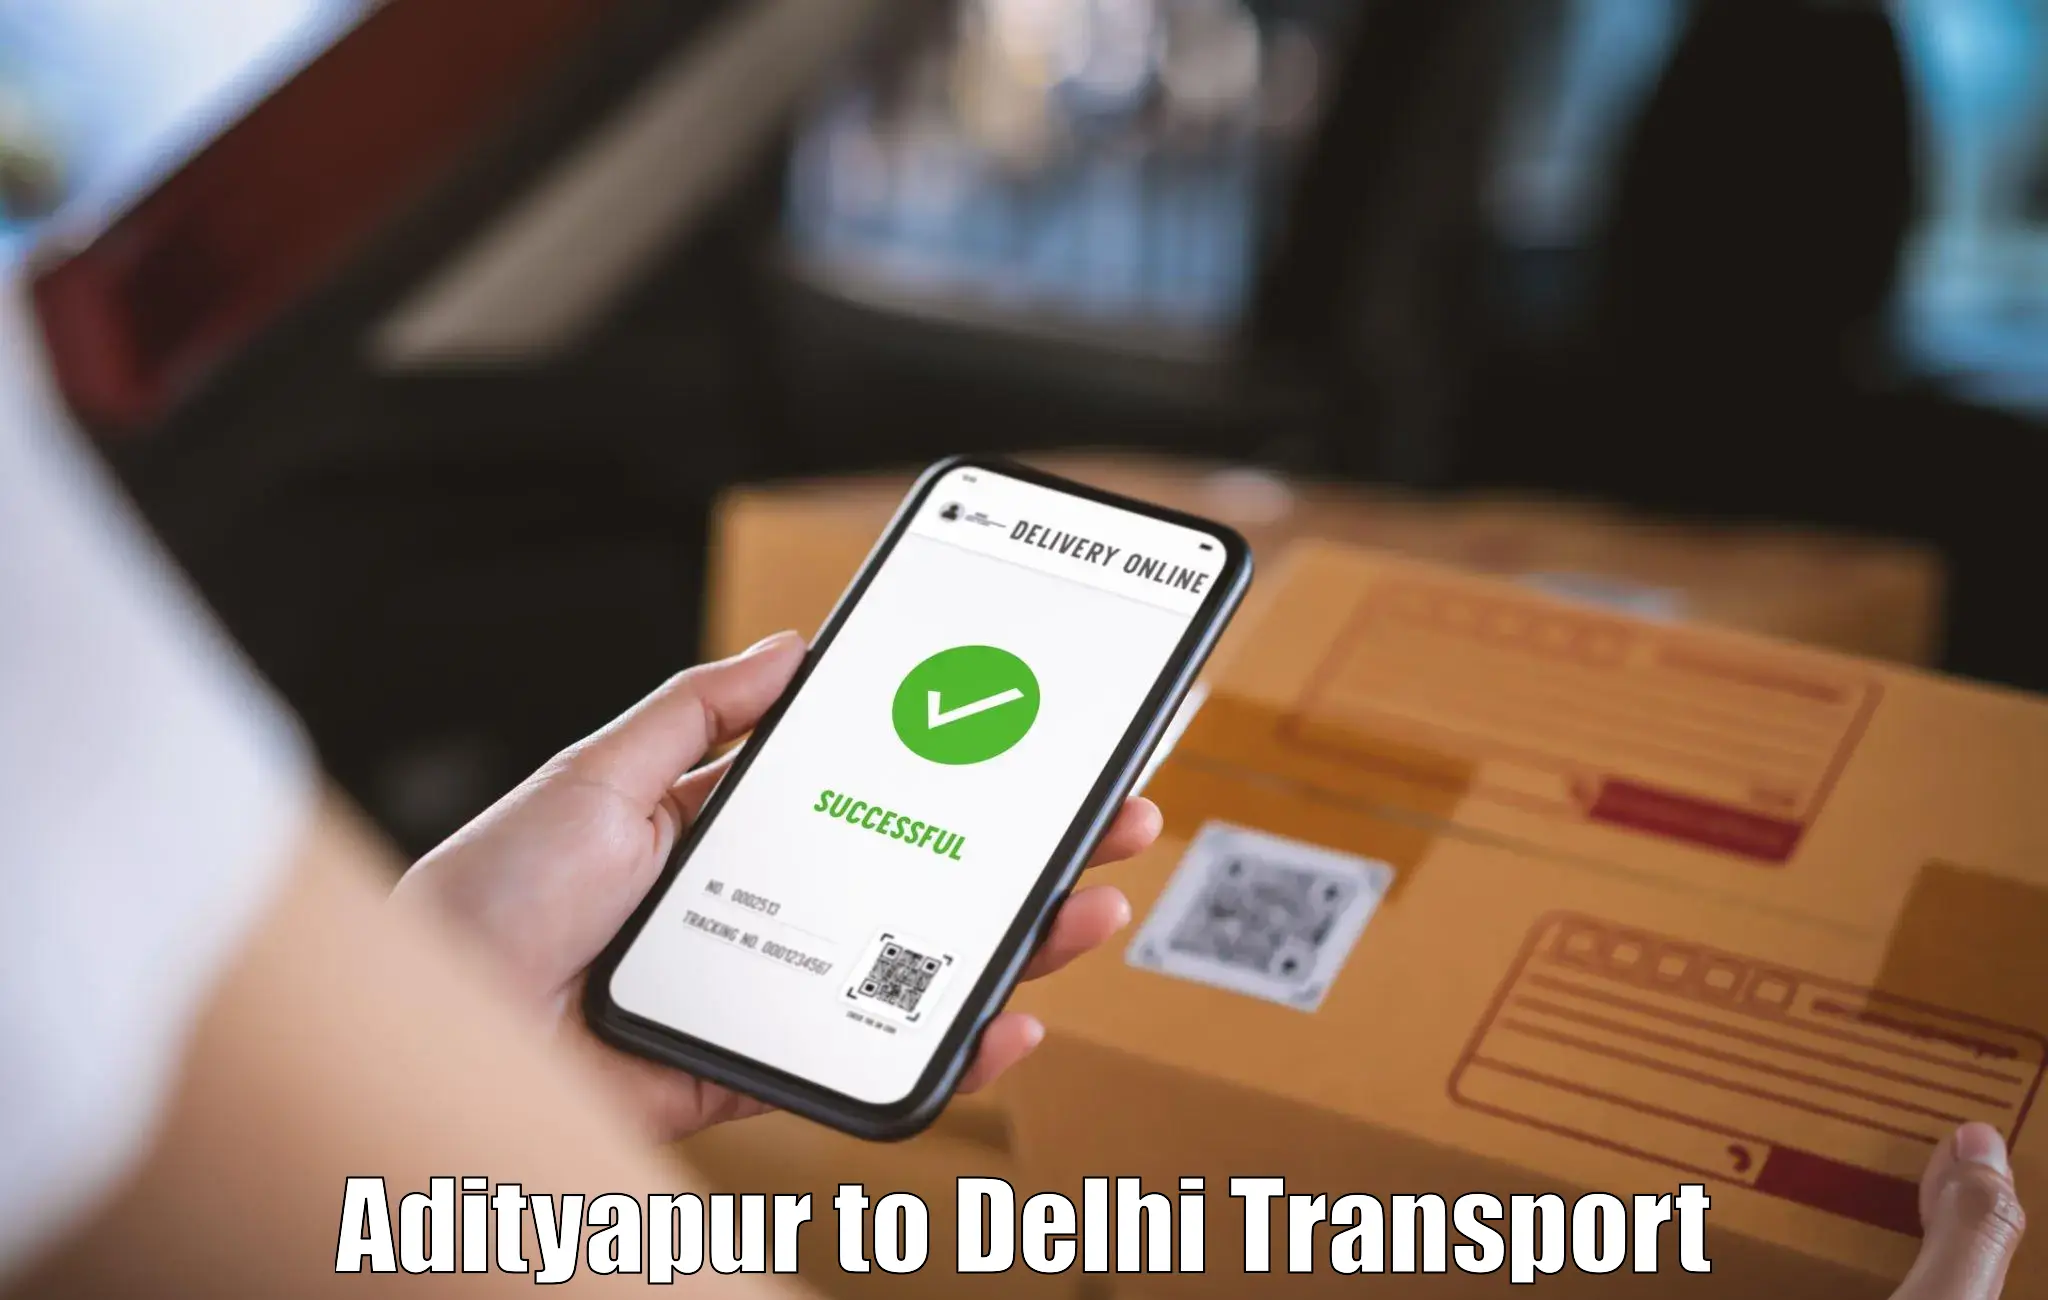 India truck logistics services Adityapur to IIT Delhi